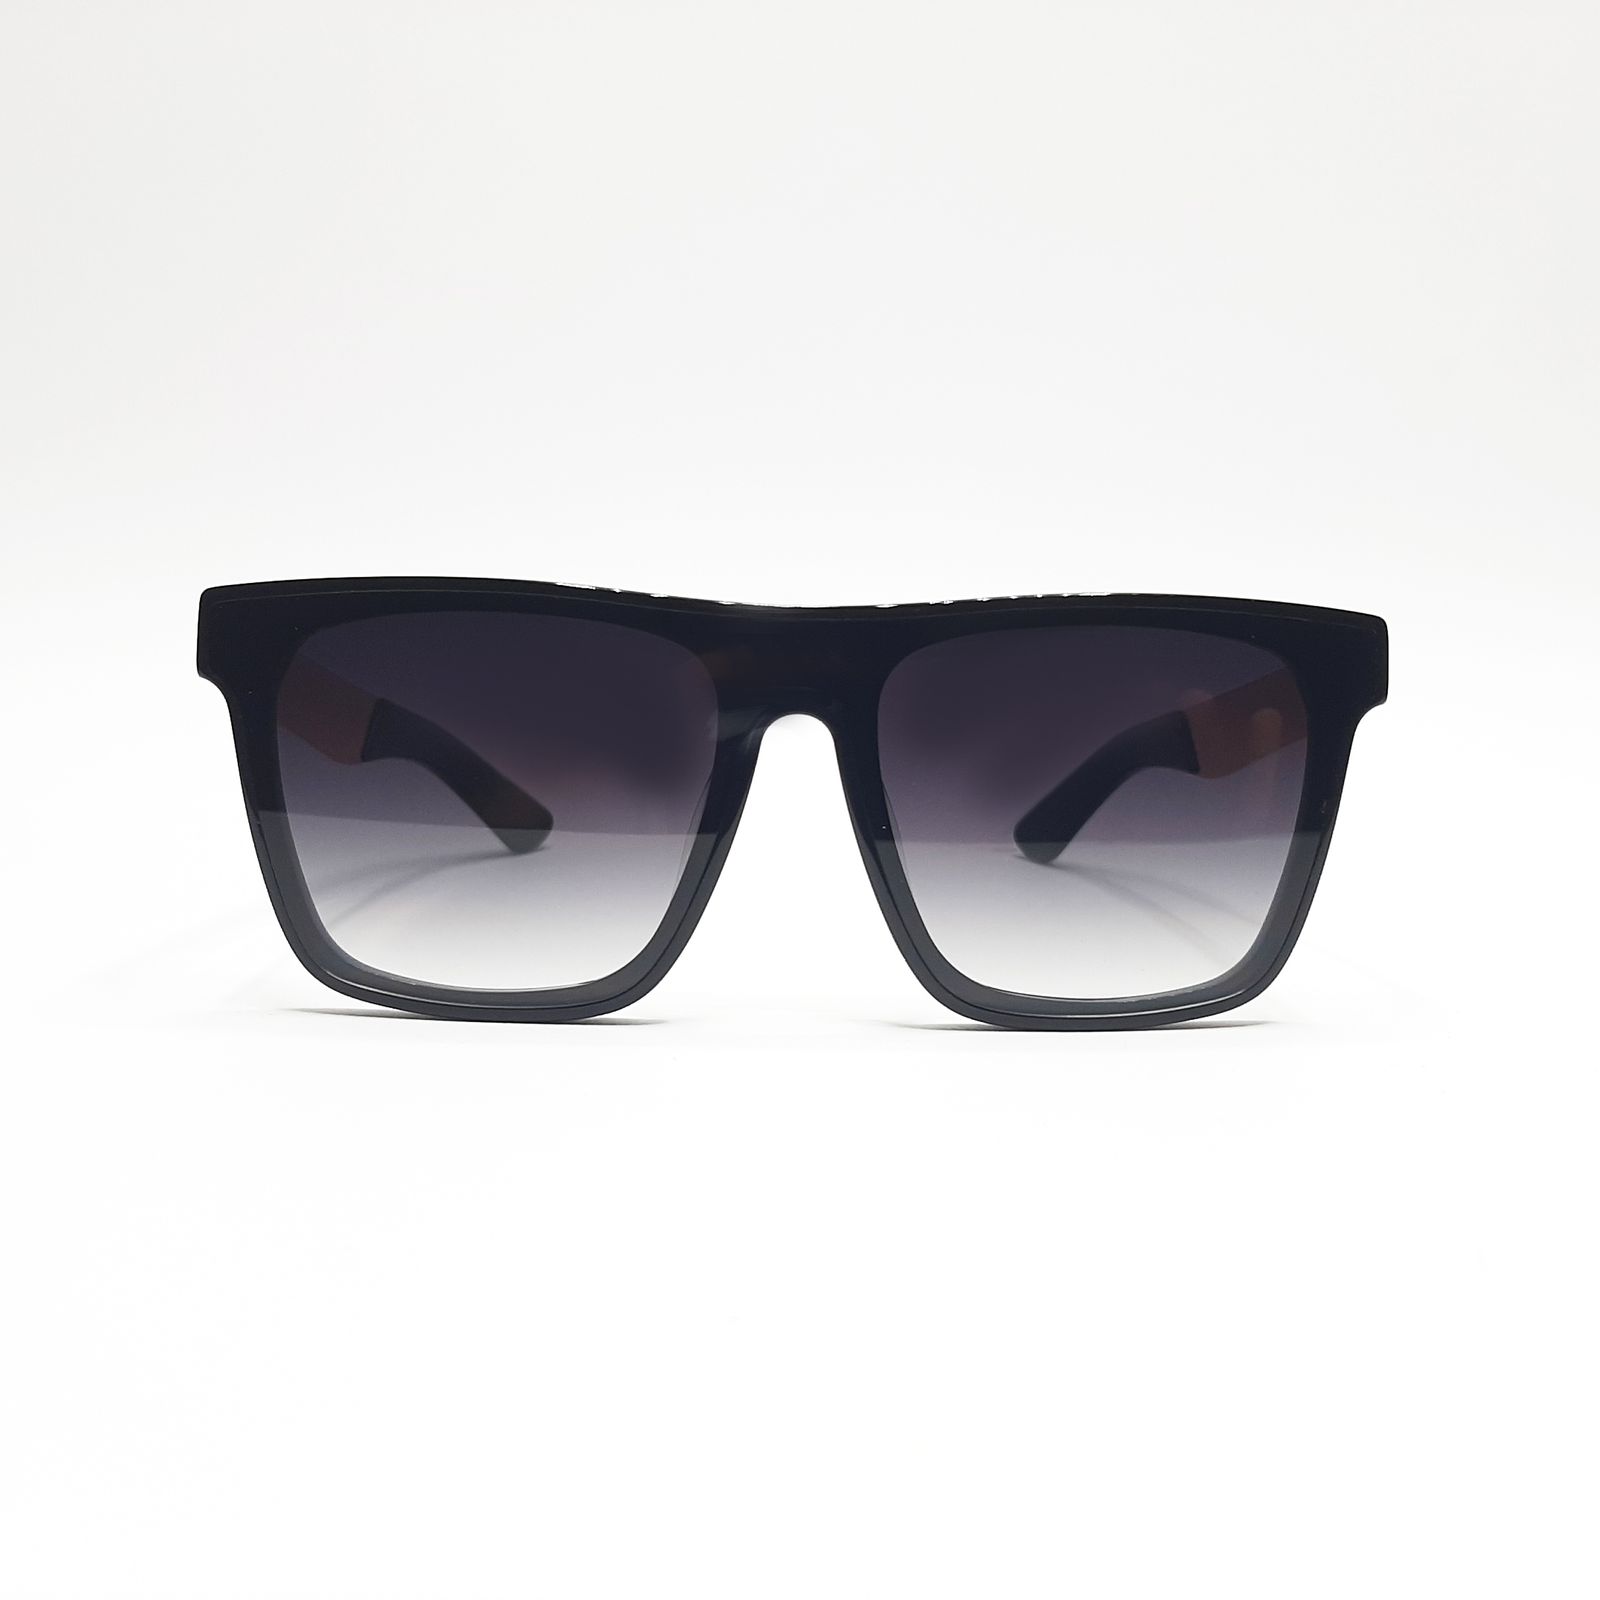 عینک آفتابی گوچی مدل GG1075c1 -  - 4